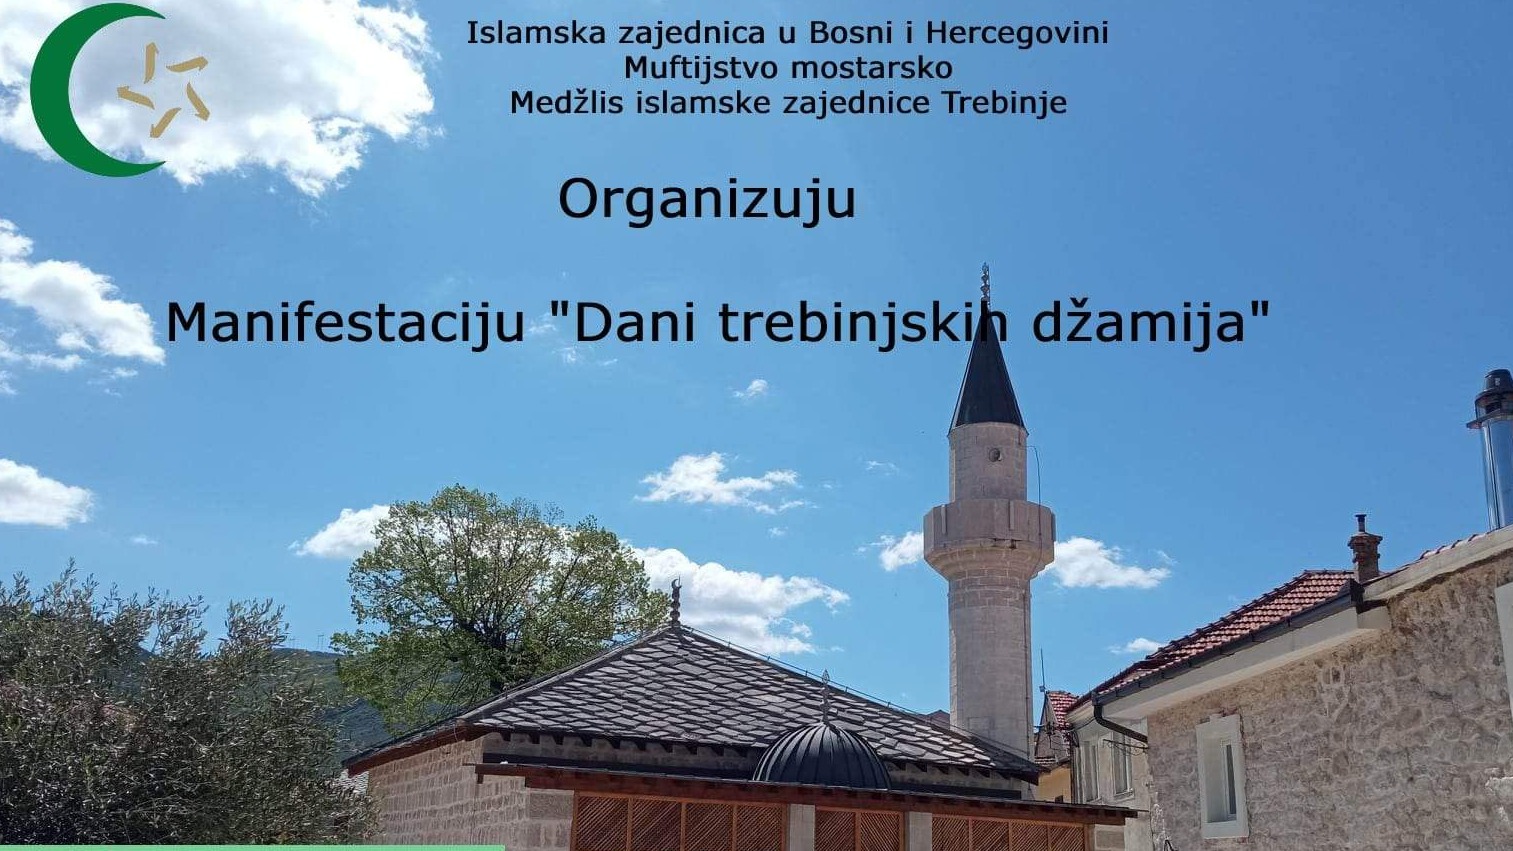 Manifestacija "Dani trebinjskih džamija" od 8. do 31. jula